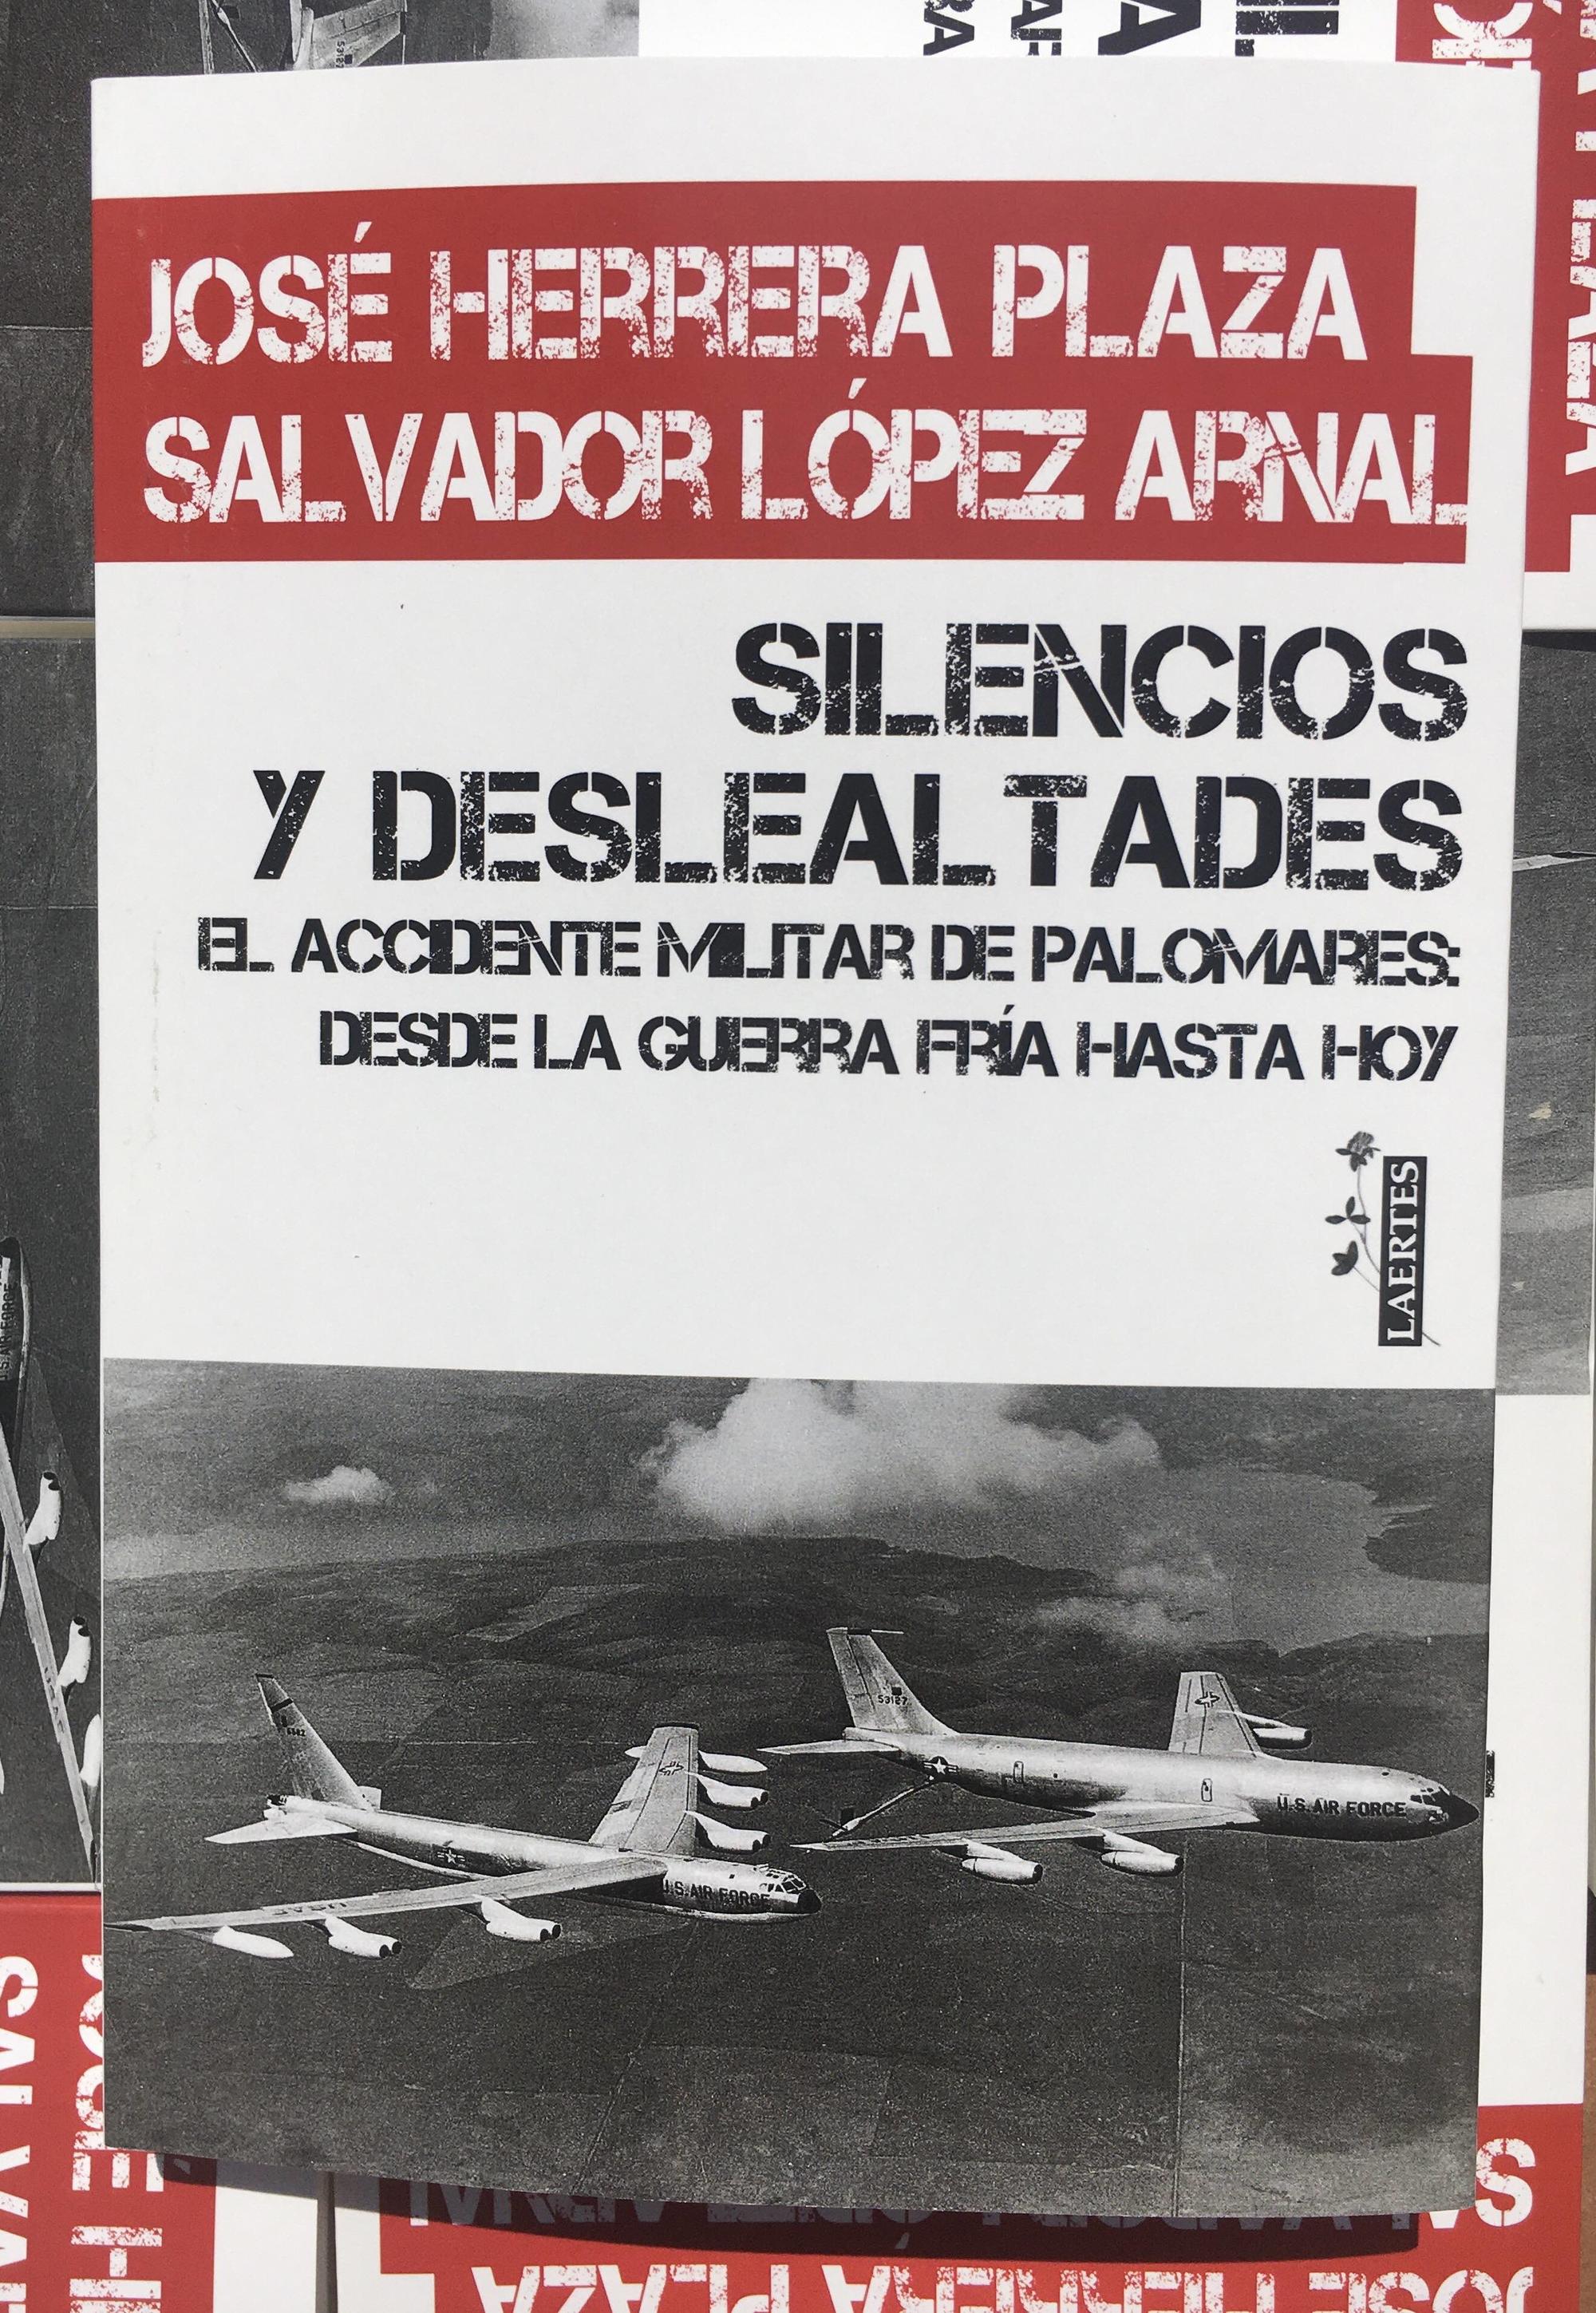 Libro "Silencios y deslealtades", sobre el incidente de Palomares de 1966.